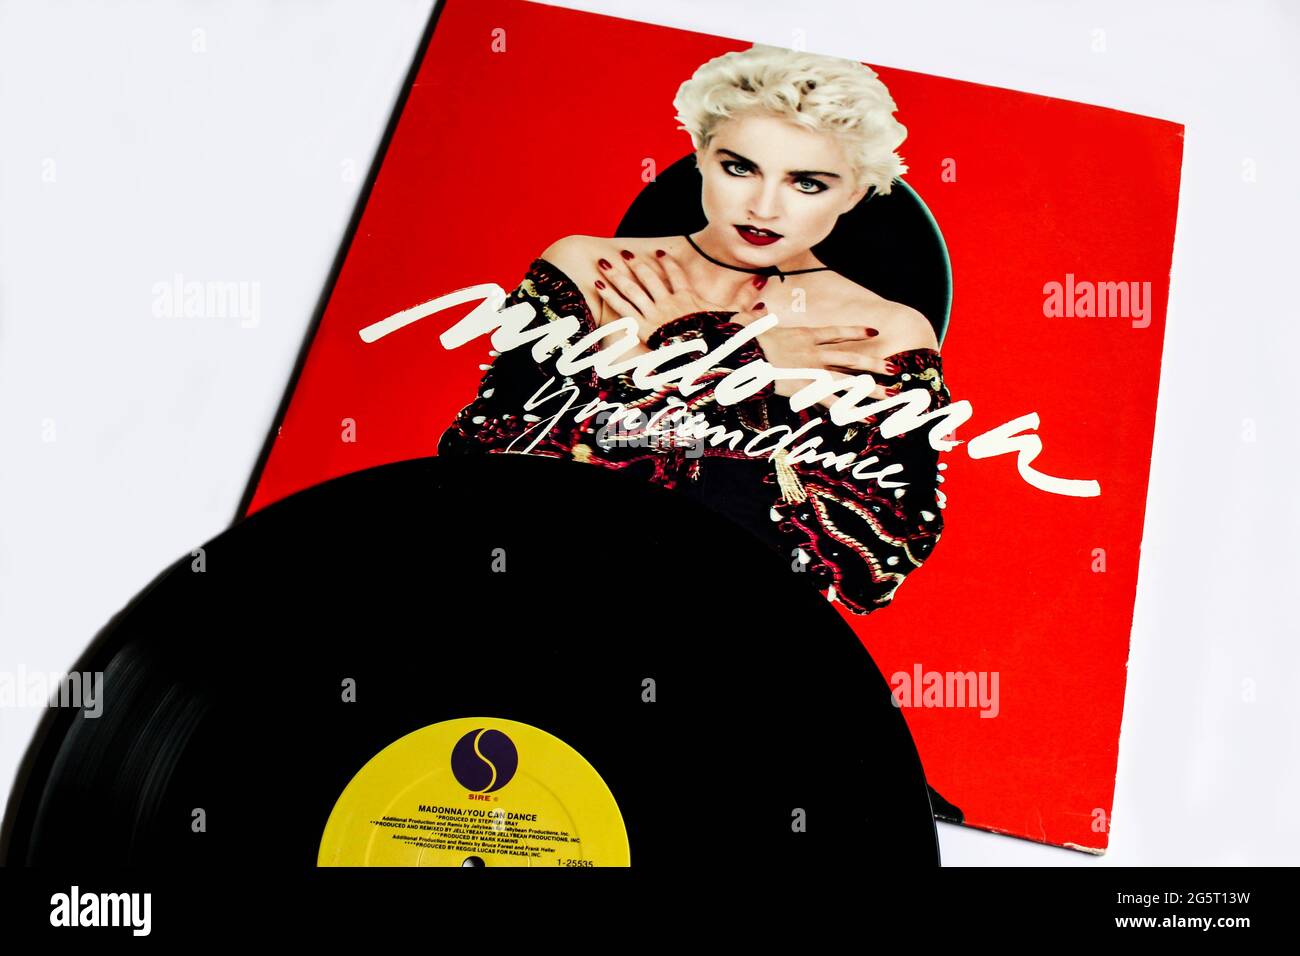 Pop- und House-Tanzkünstler, Madonna remixt Musikalbum auf Vinyl-Schallplatte. Titel: Du kannst Album Cover tanzen Stockfoto